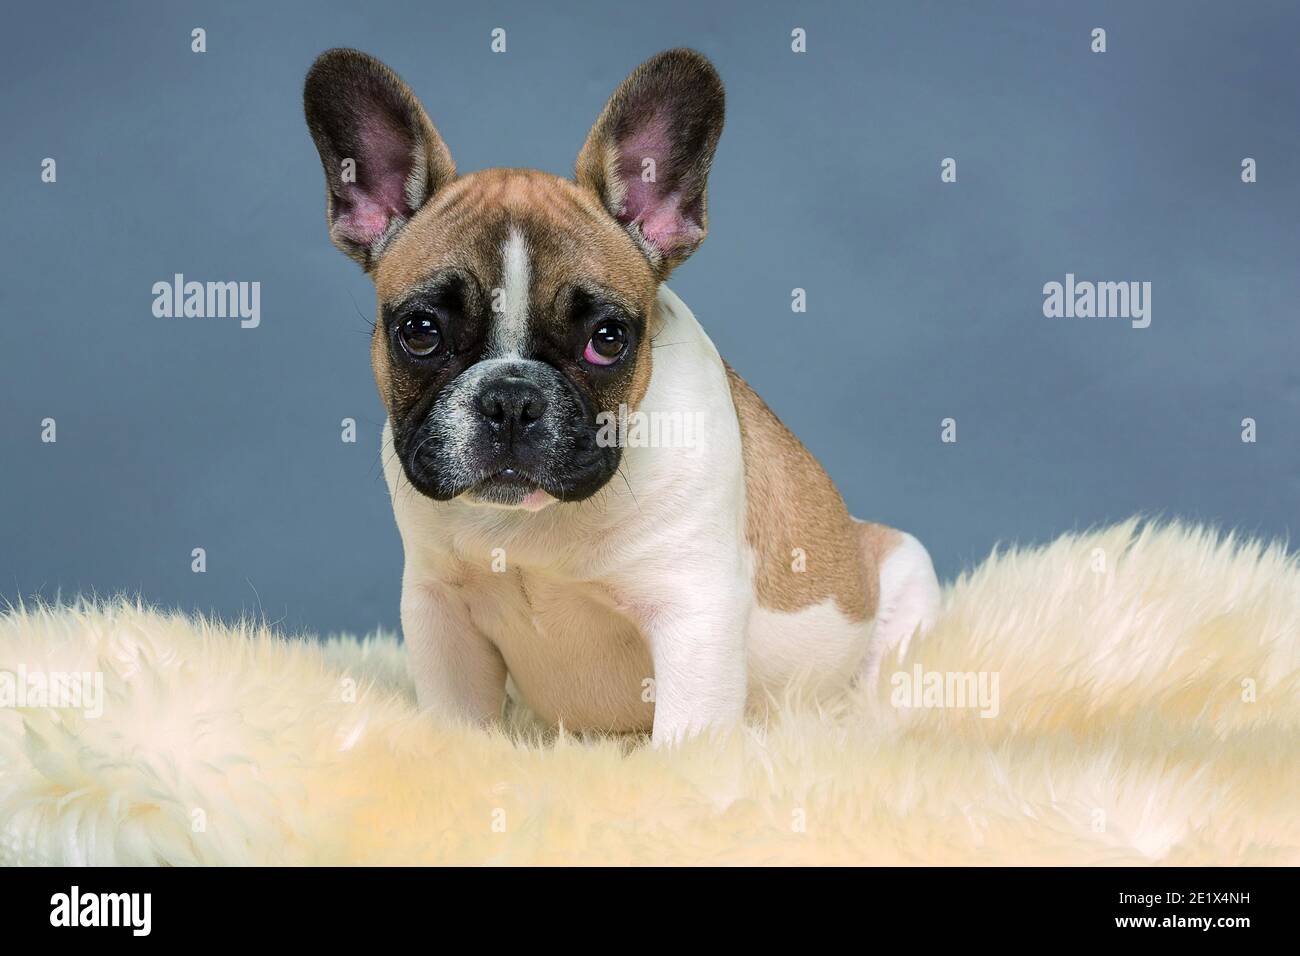 Bulldog francese, cucciolo, Bullys francese, bianco marrone chiaro e con volto scuro, seduta su pelliccia, fotografia in studio Foto Stock